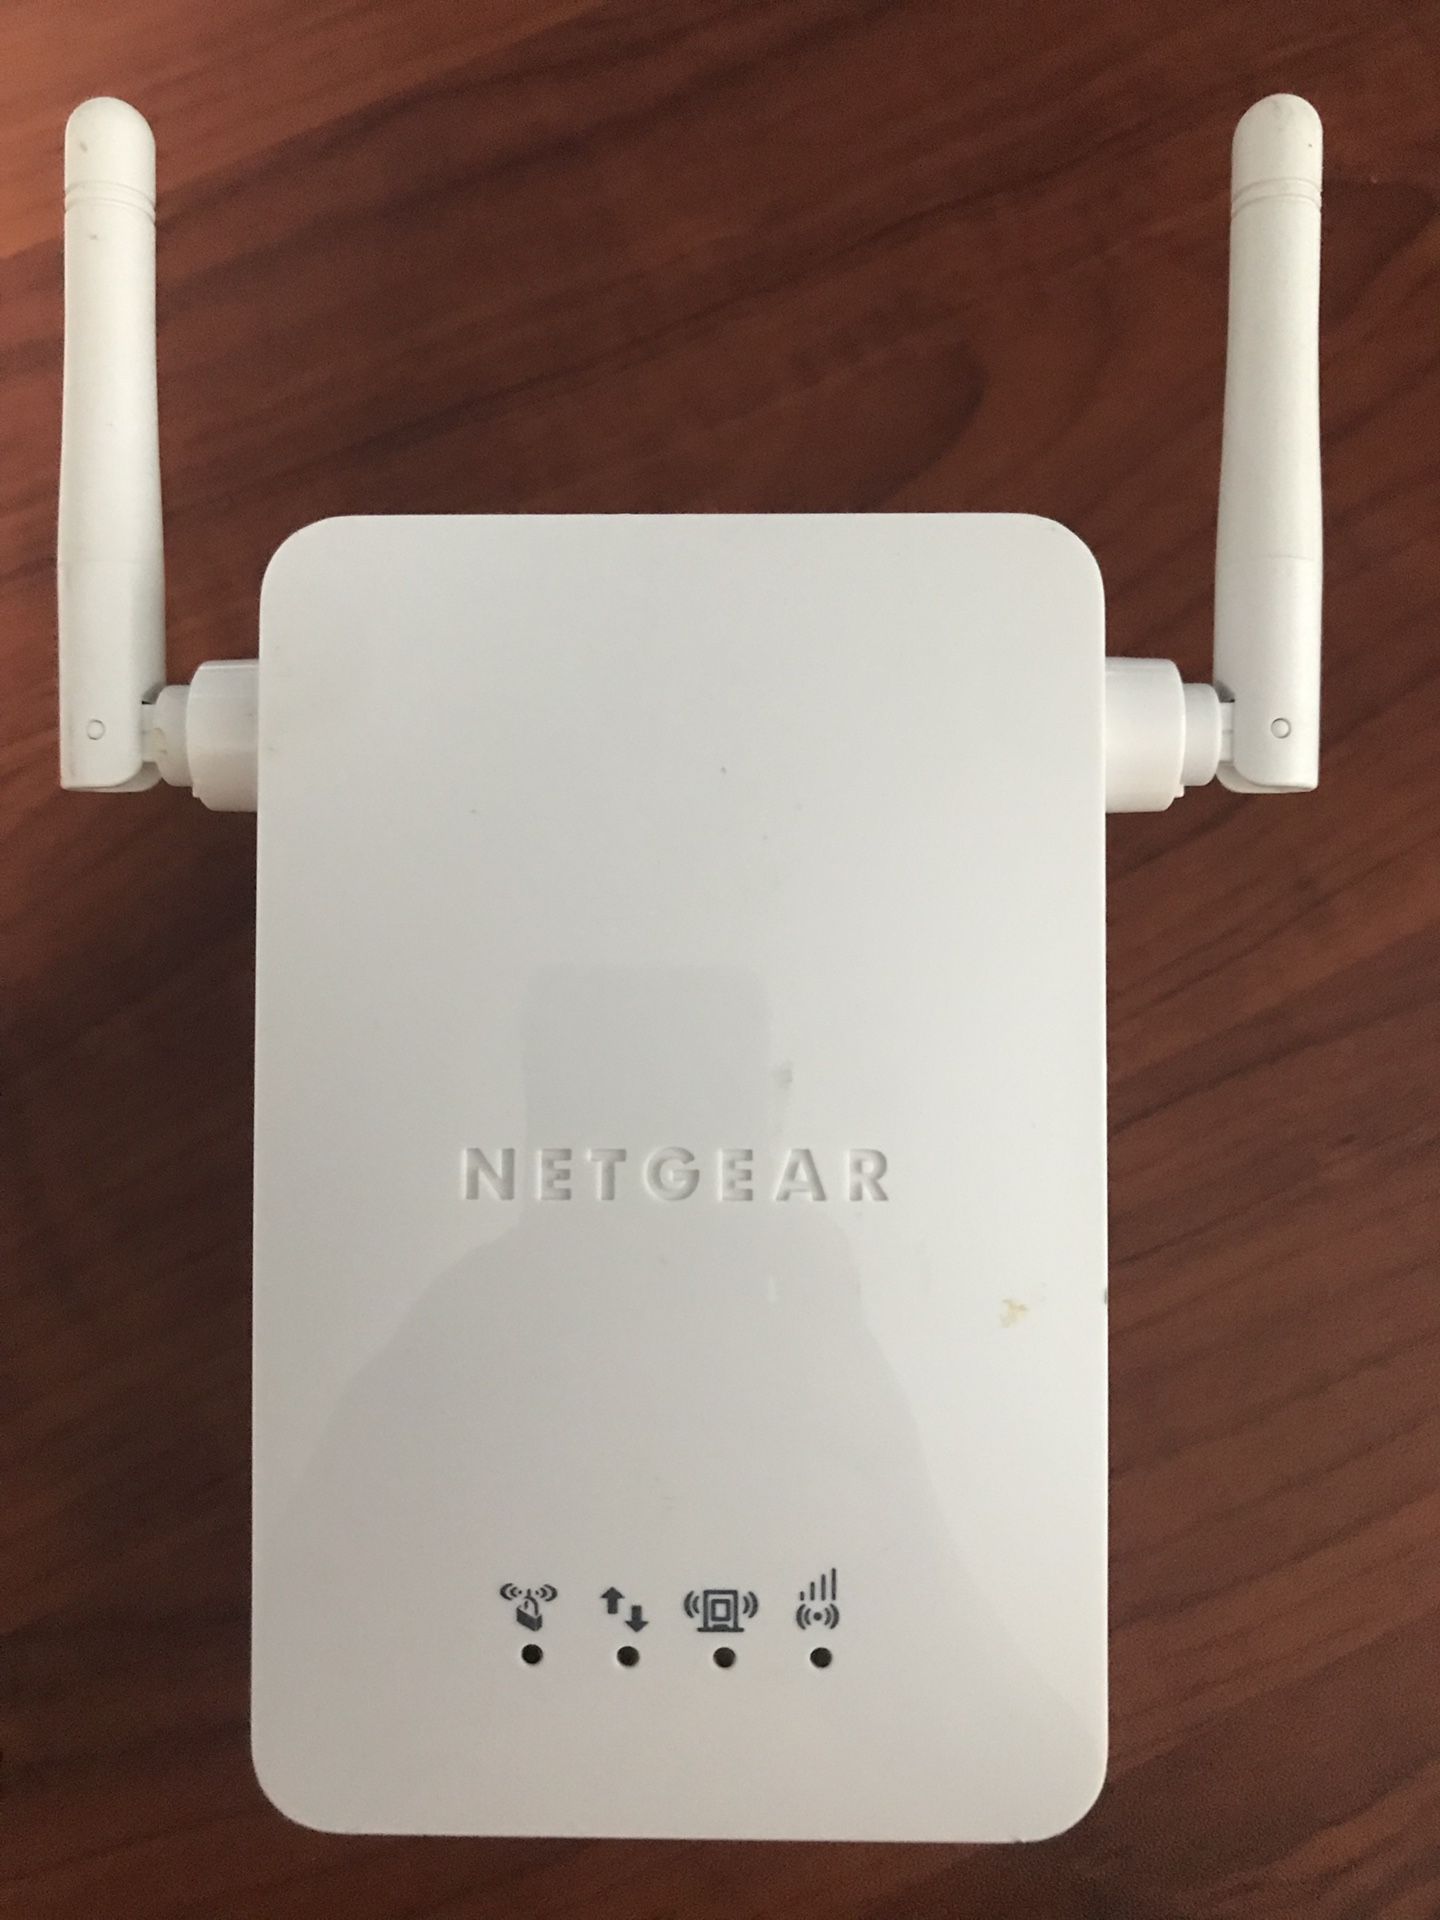 Netgear wn3000rp WiFi extender